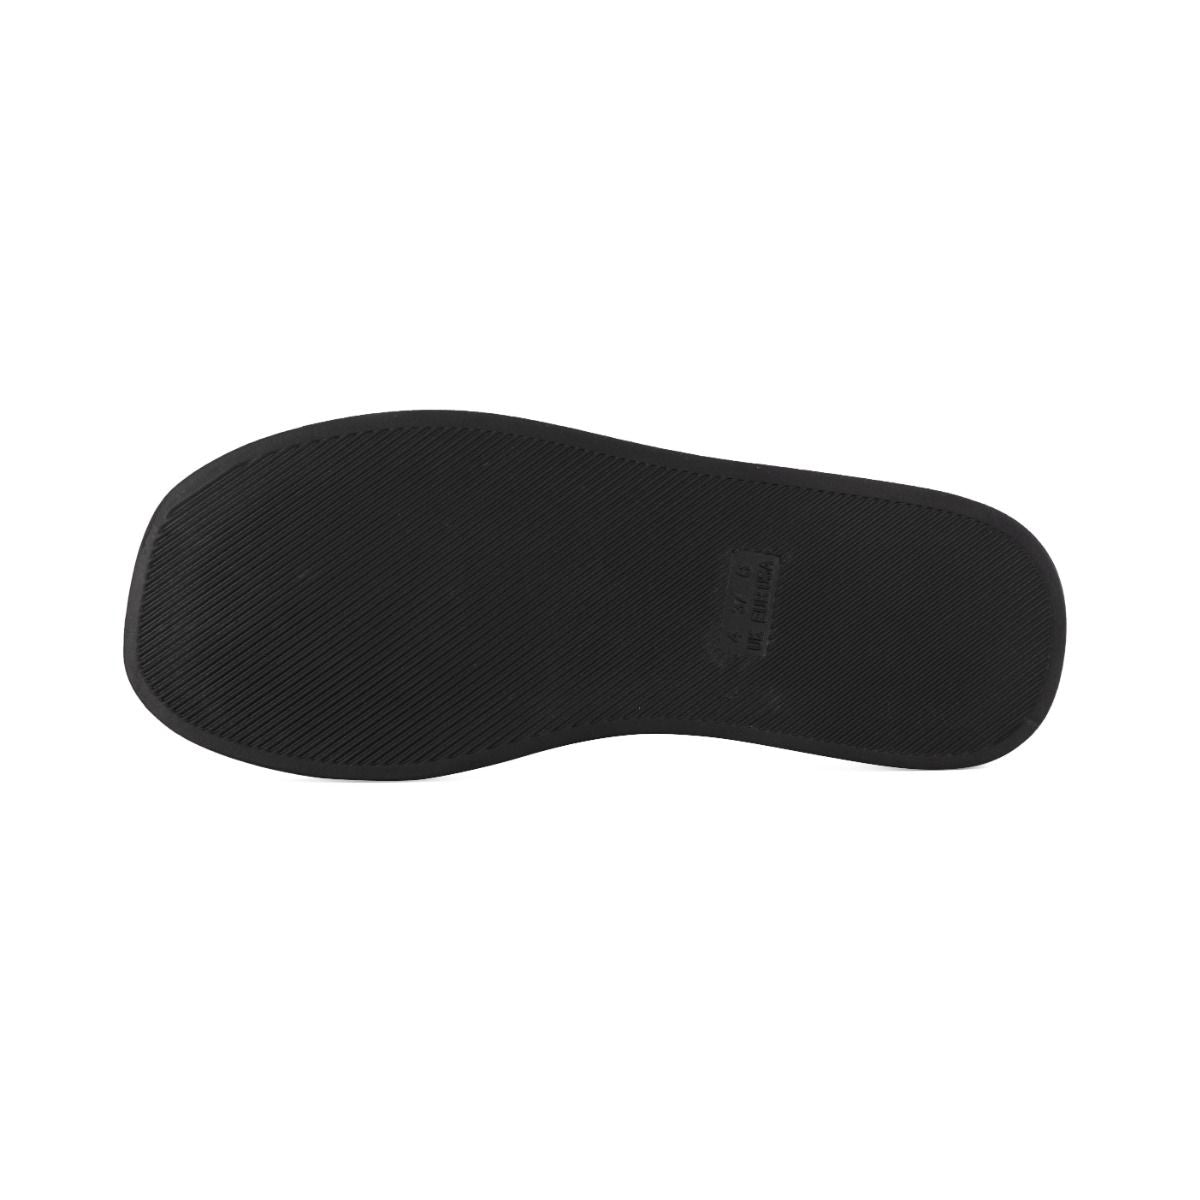 Black Padded Flip Flops